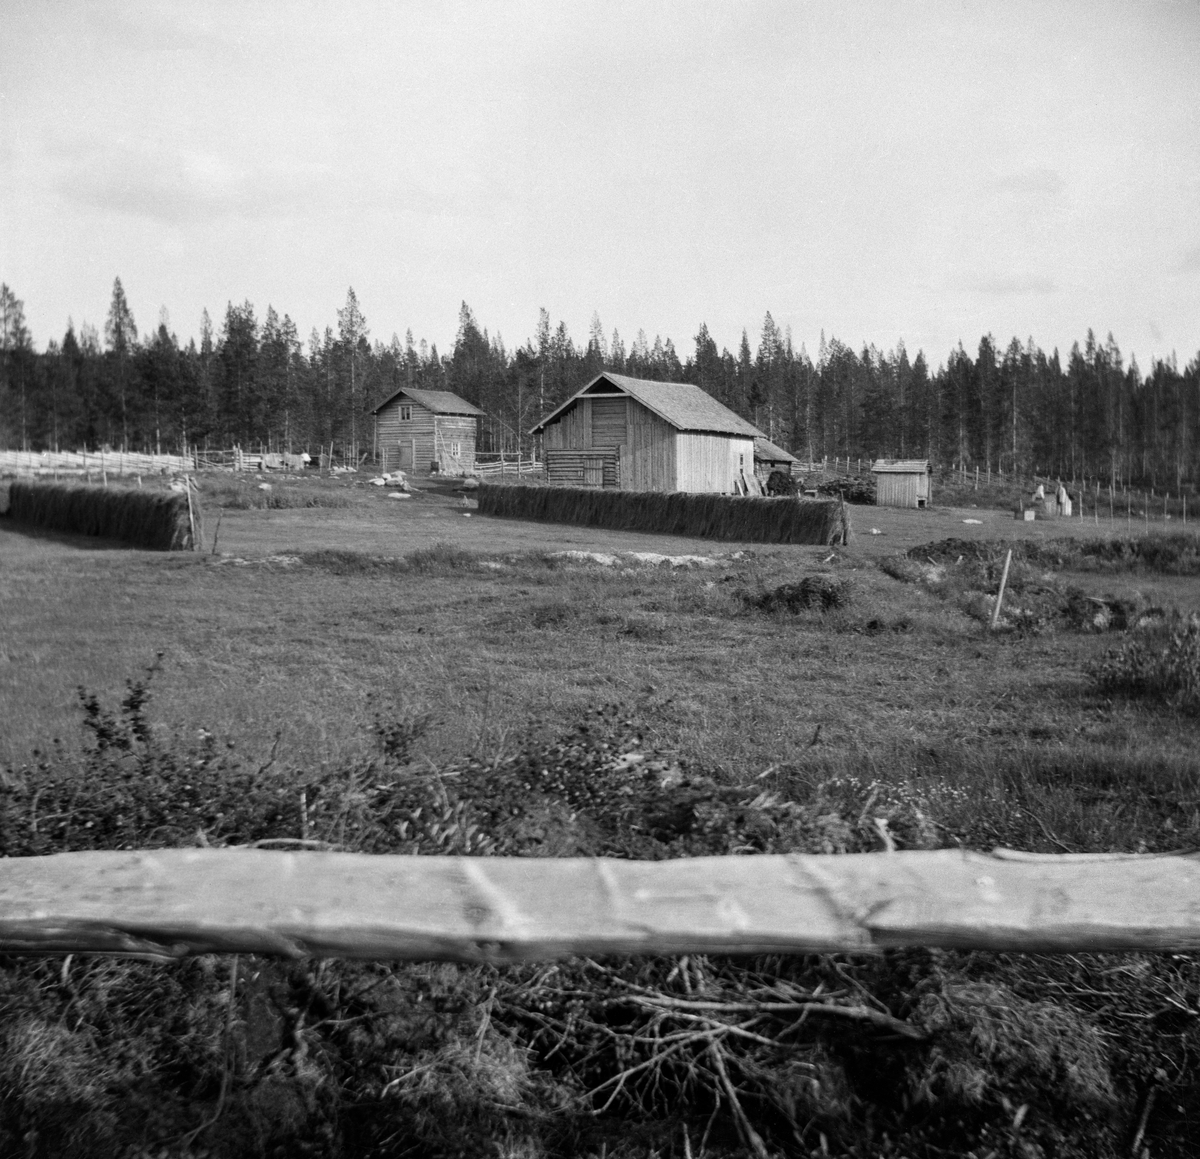 Småbruket Myrvangi i Engerdal. Dette bruket ble bygslet i 1902 av Gjertrud Myrvang (1861-1958) og Per P. Myrvang- (1864-1943).  Bildet er tatt mot bygningene fra utkanten av det ryddete området, med en horisontal kløvd trestamme i forgrunnen. Gjertrud og Per hadde to hus - et halvannenetasjes våningshus med snaut 20 kvadratmeters grunnflate og en fjøs-, stall- og låvebygning med drøyt 100 kvadratmeters grunnflate. Da dette fotografiet ble tatt hadde Gjertrud og Per skått graset som vokste på den dyrkede marka nærmest bygningene og reist hesjer for å tørke høy til vintersesongen. Innmarka er skjermet med en skigard mot nåleskogen i bakgrunnen.